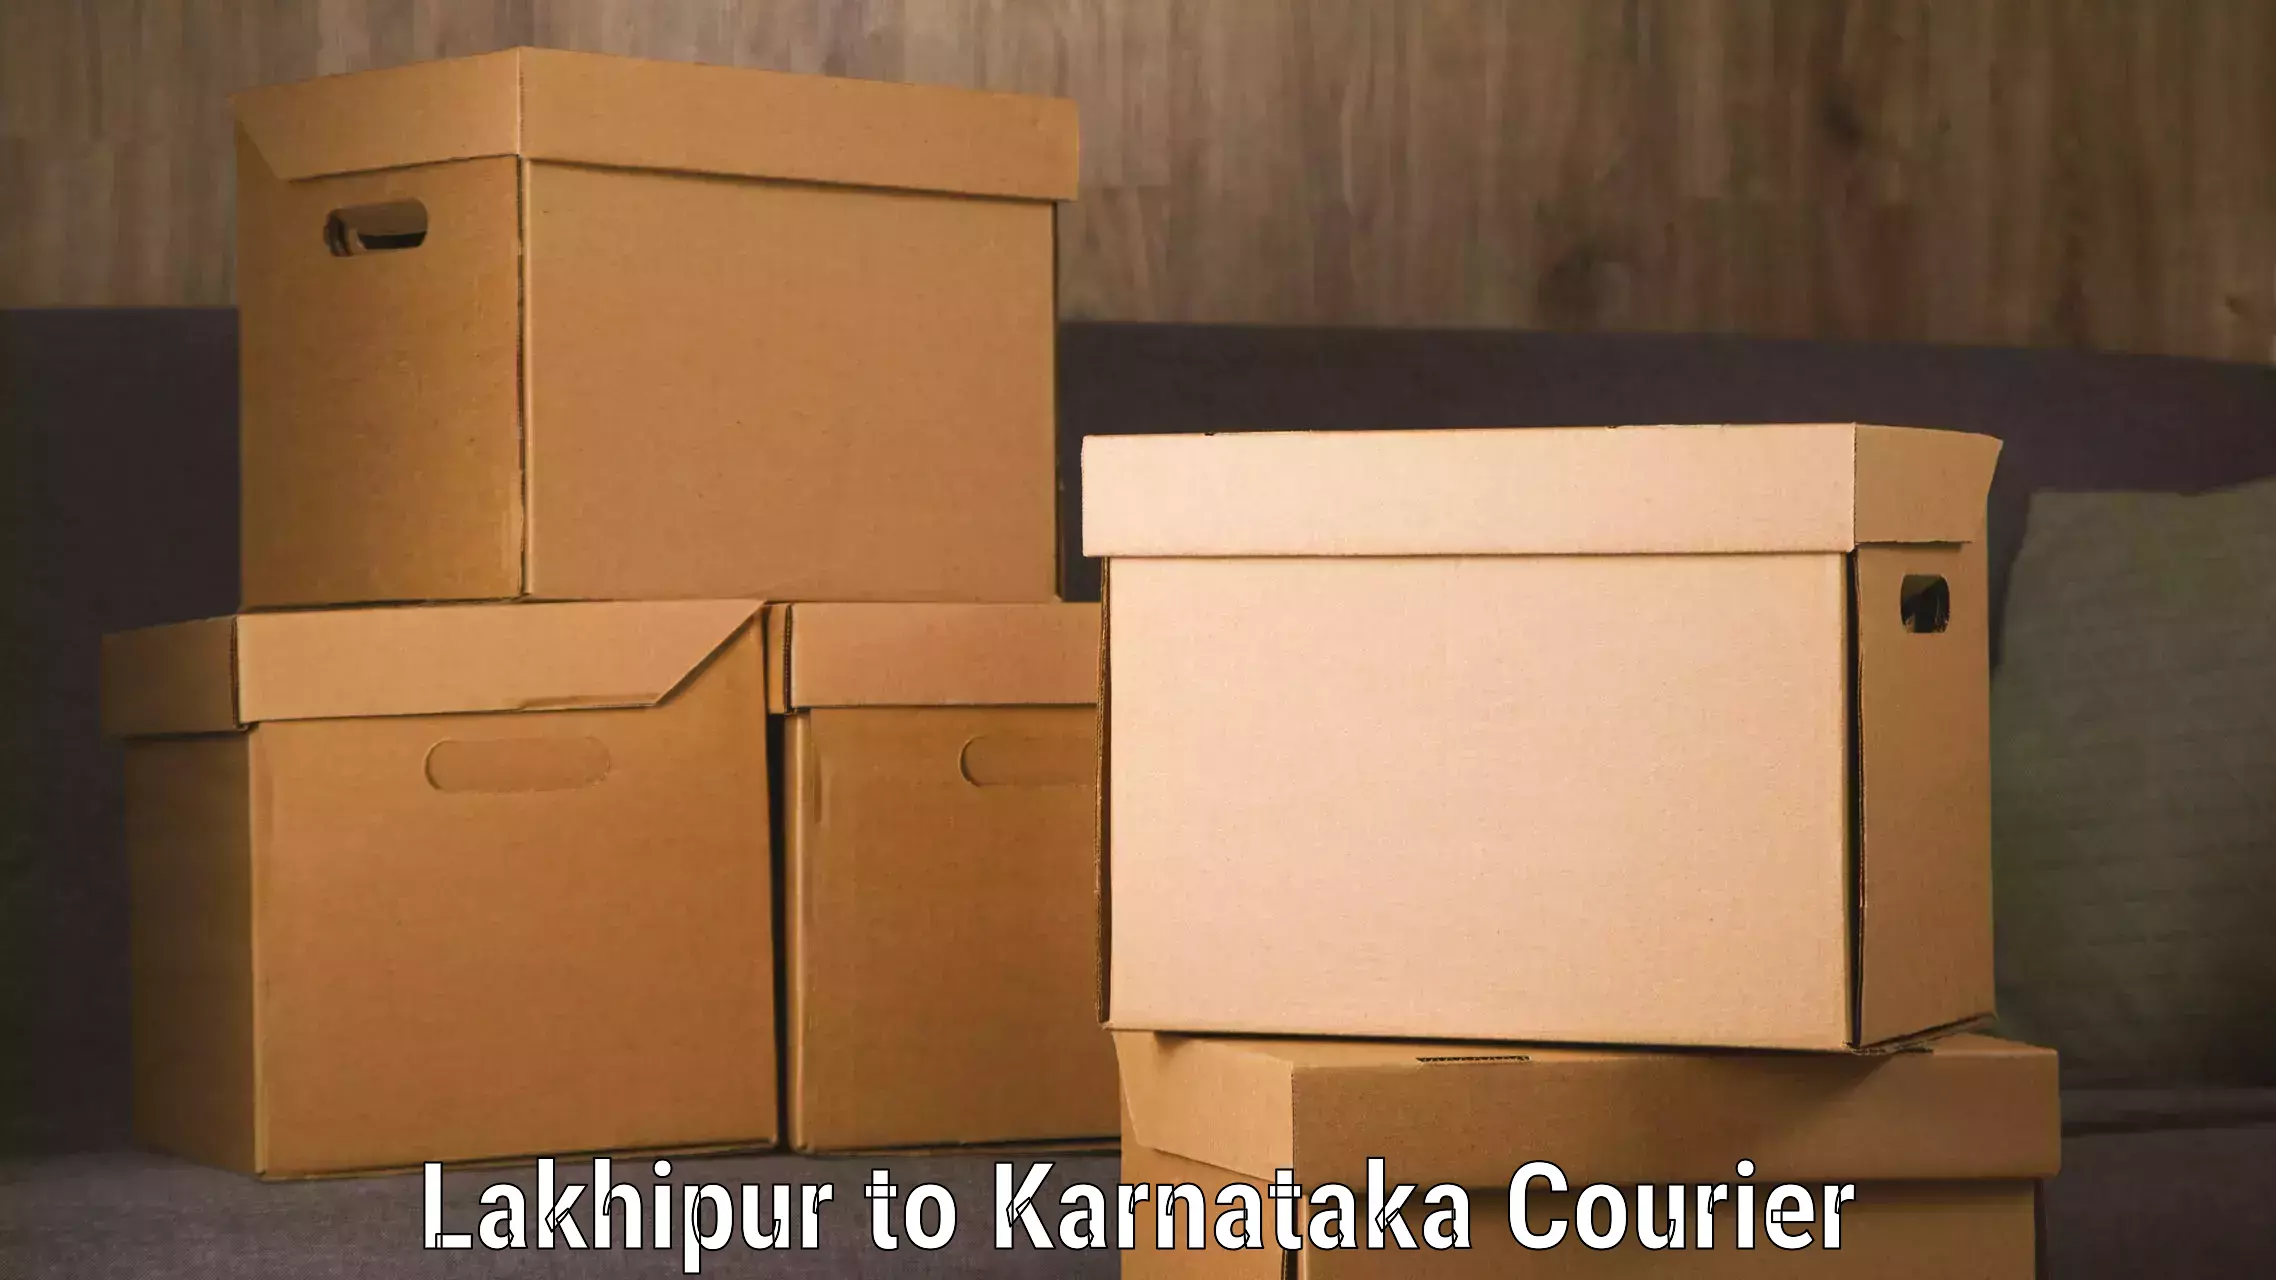 Baggage transport technology Lakhipur to Karnataka